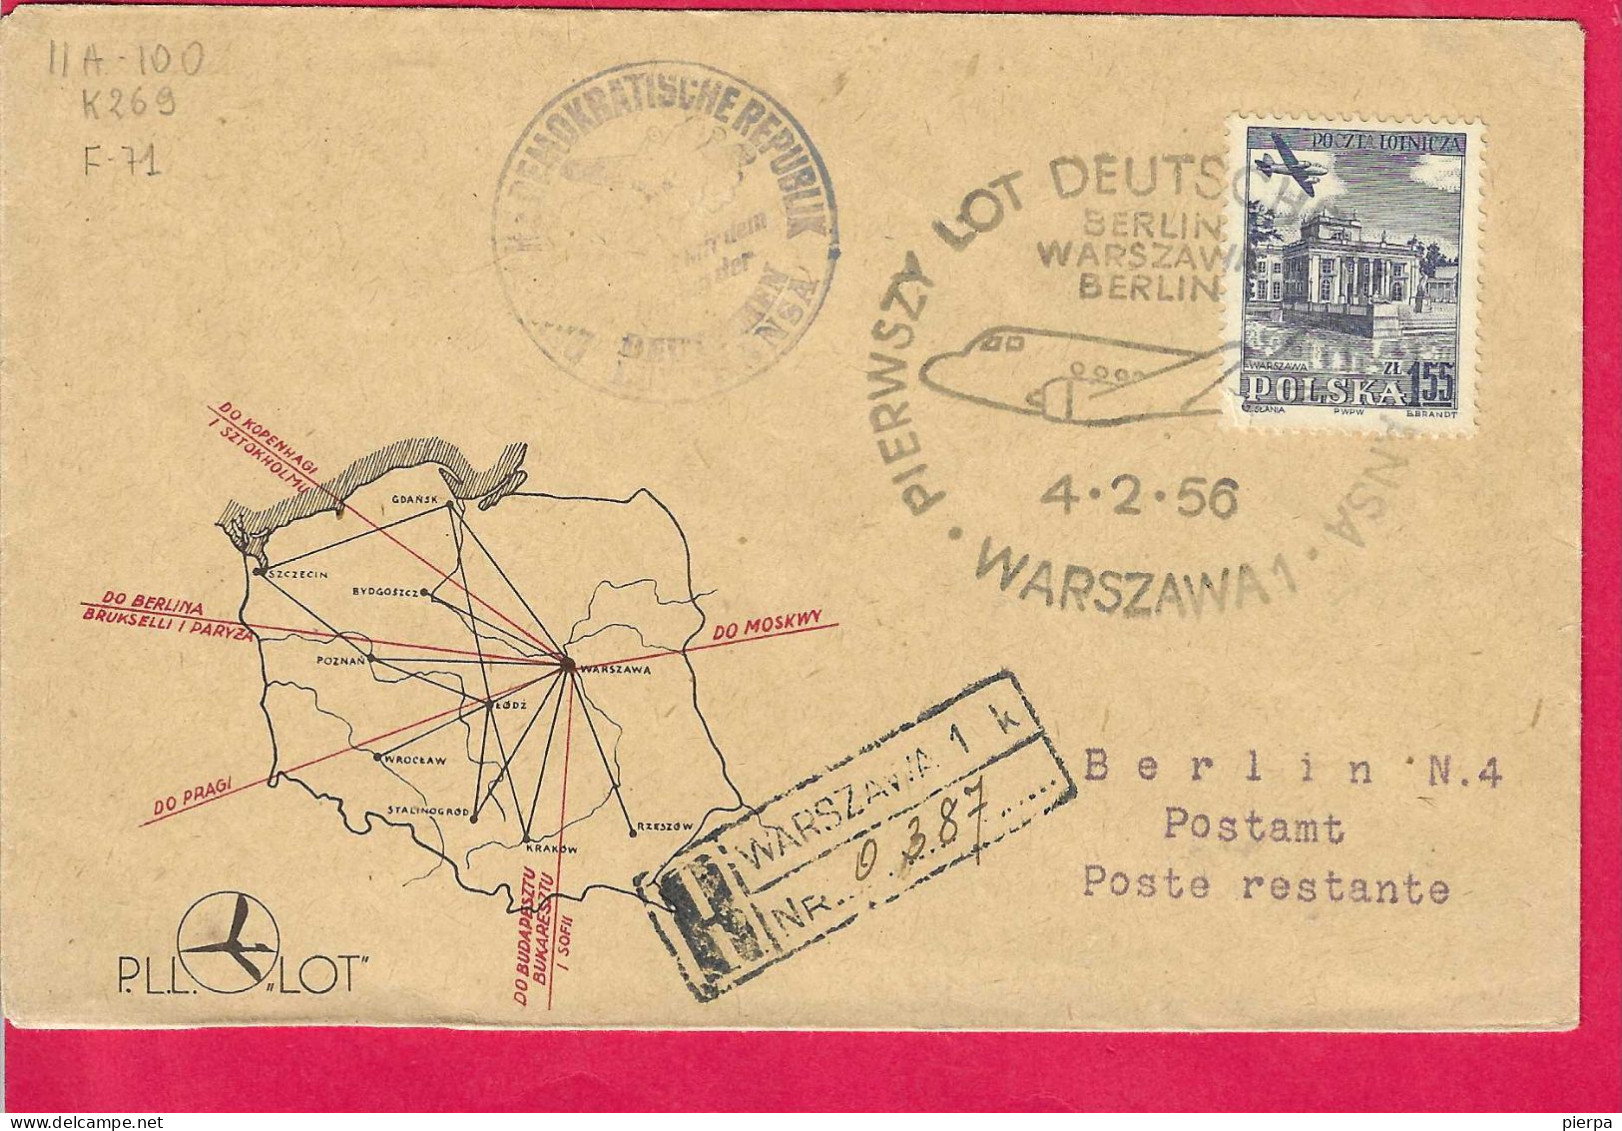 POLAND - LOT FLIGHT BERLIN/WARSZAWA/BERLIN *4.2.56* ON OFFICIAL COVER - Vliegtuigen